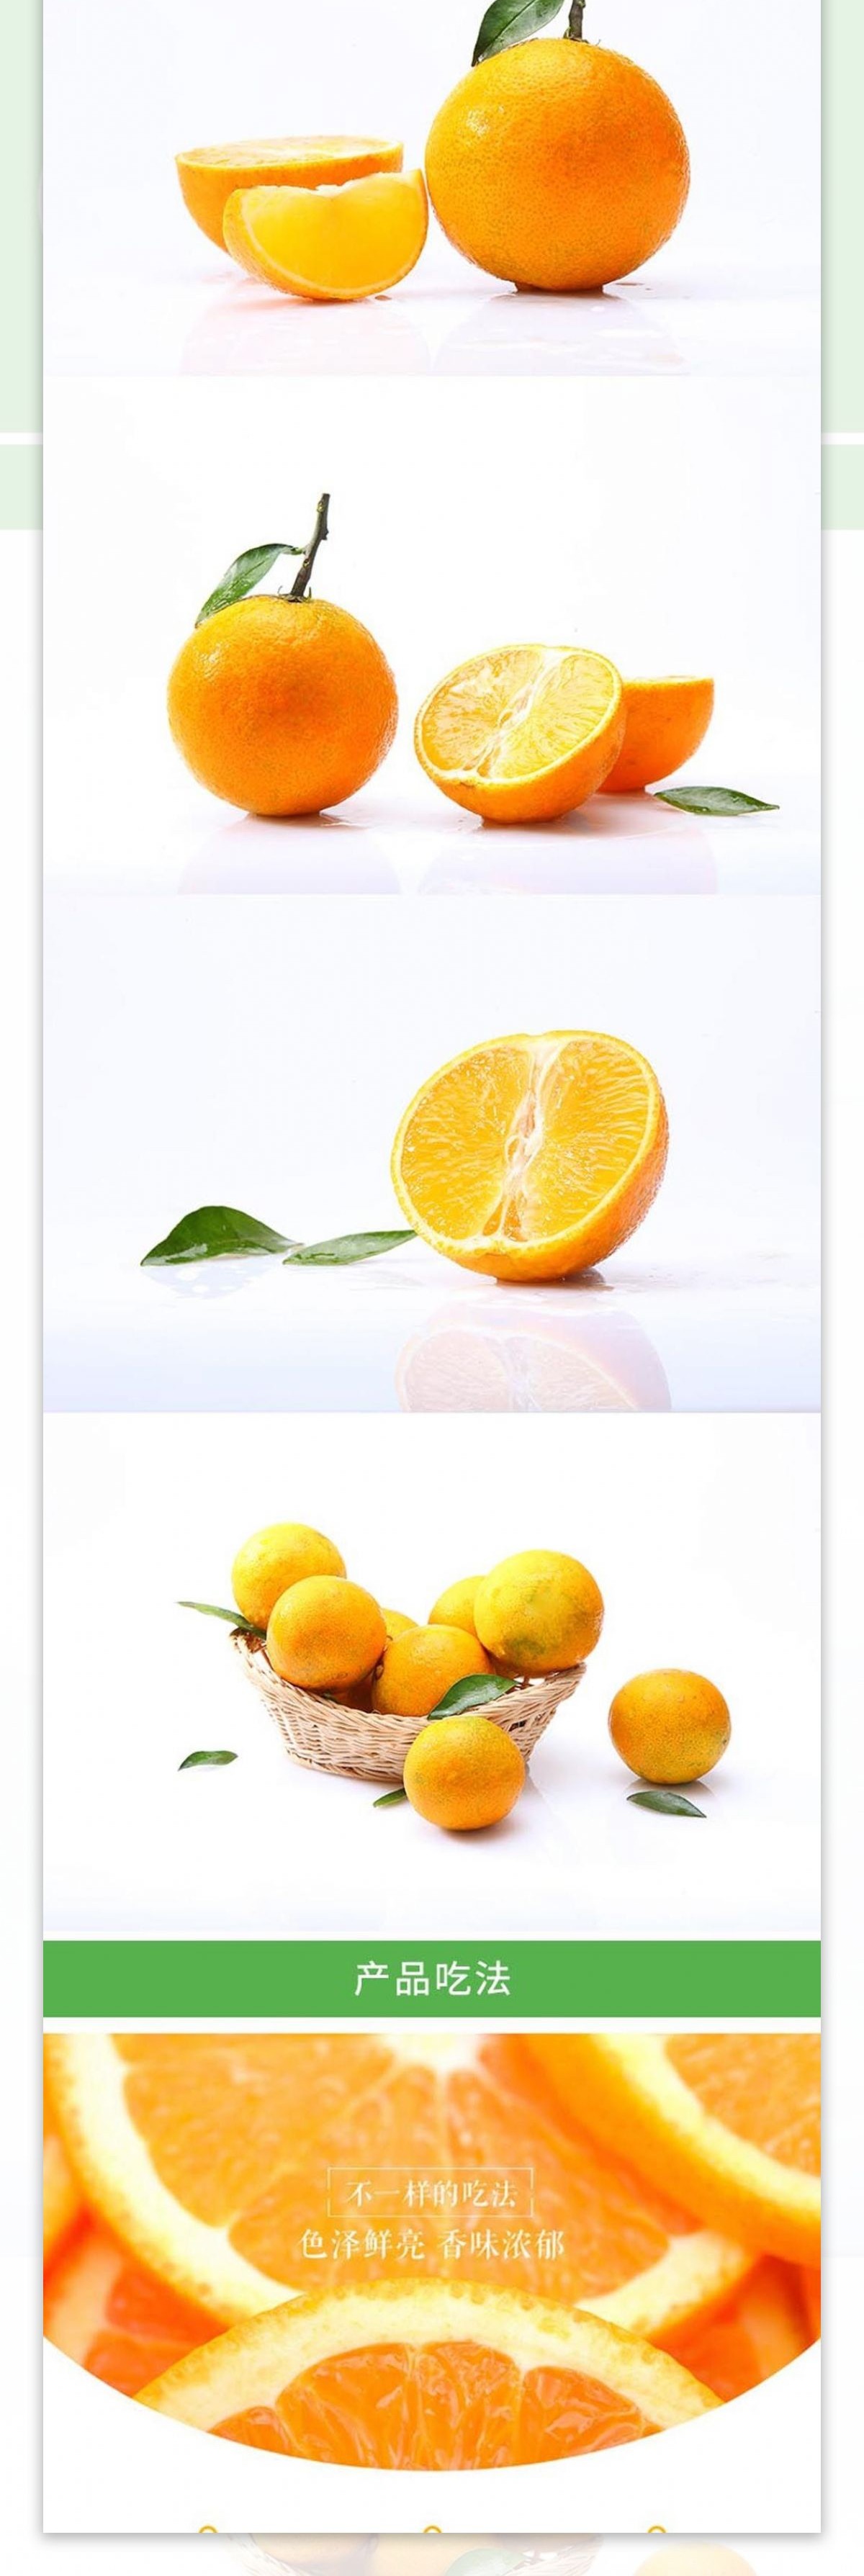 乐山甜橙详情页设计图片